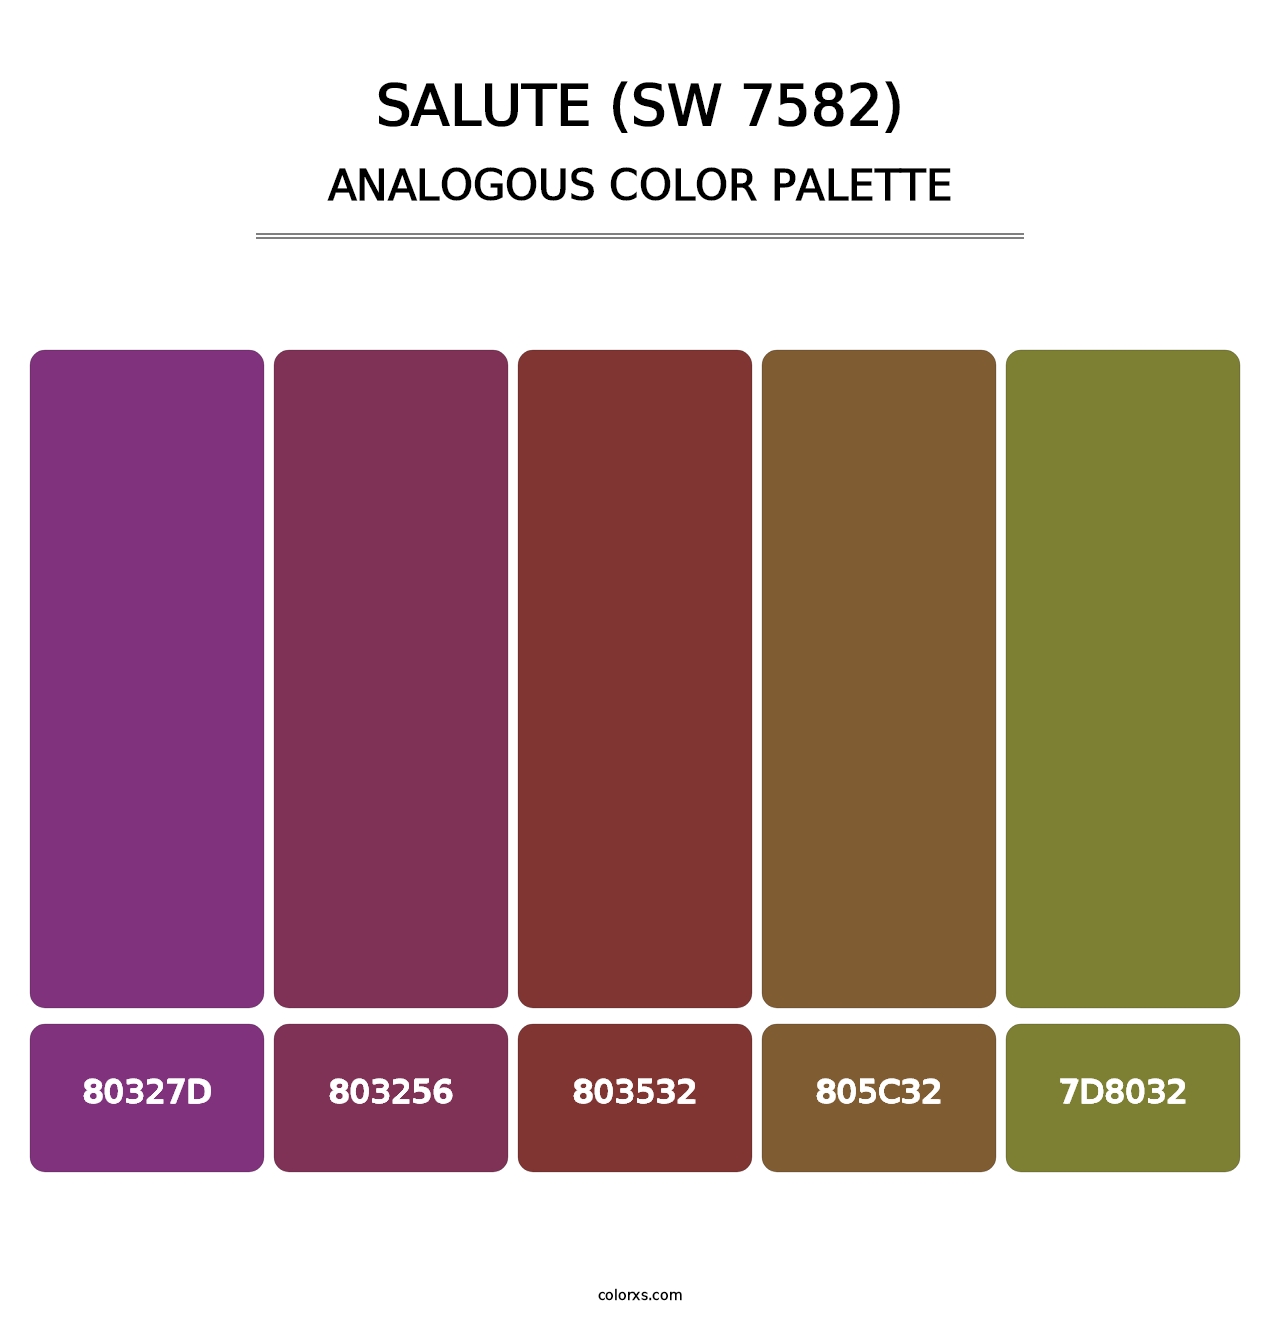 Salute (SW 7582) - Analogous Color Palette